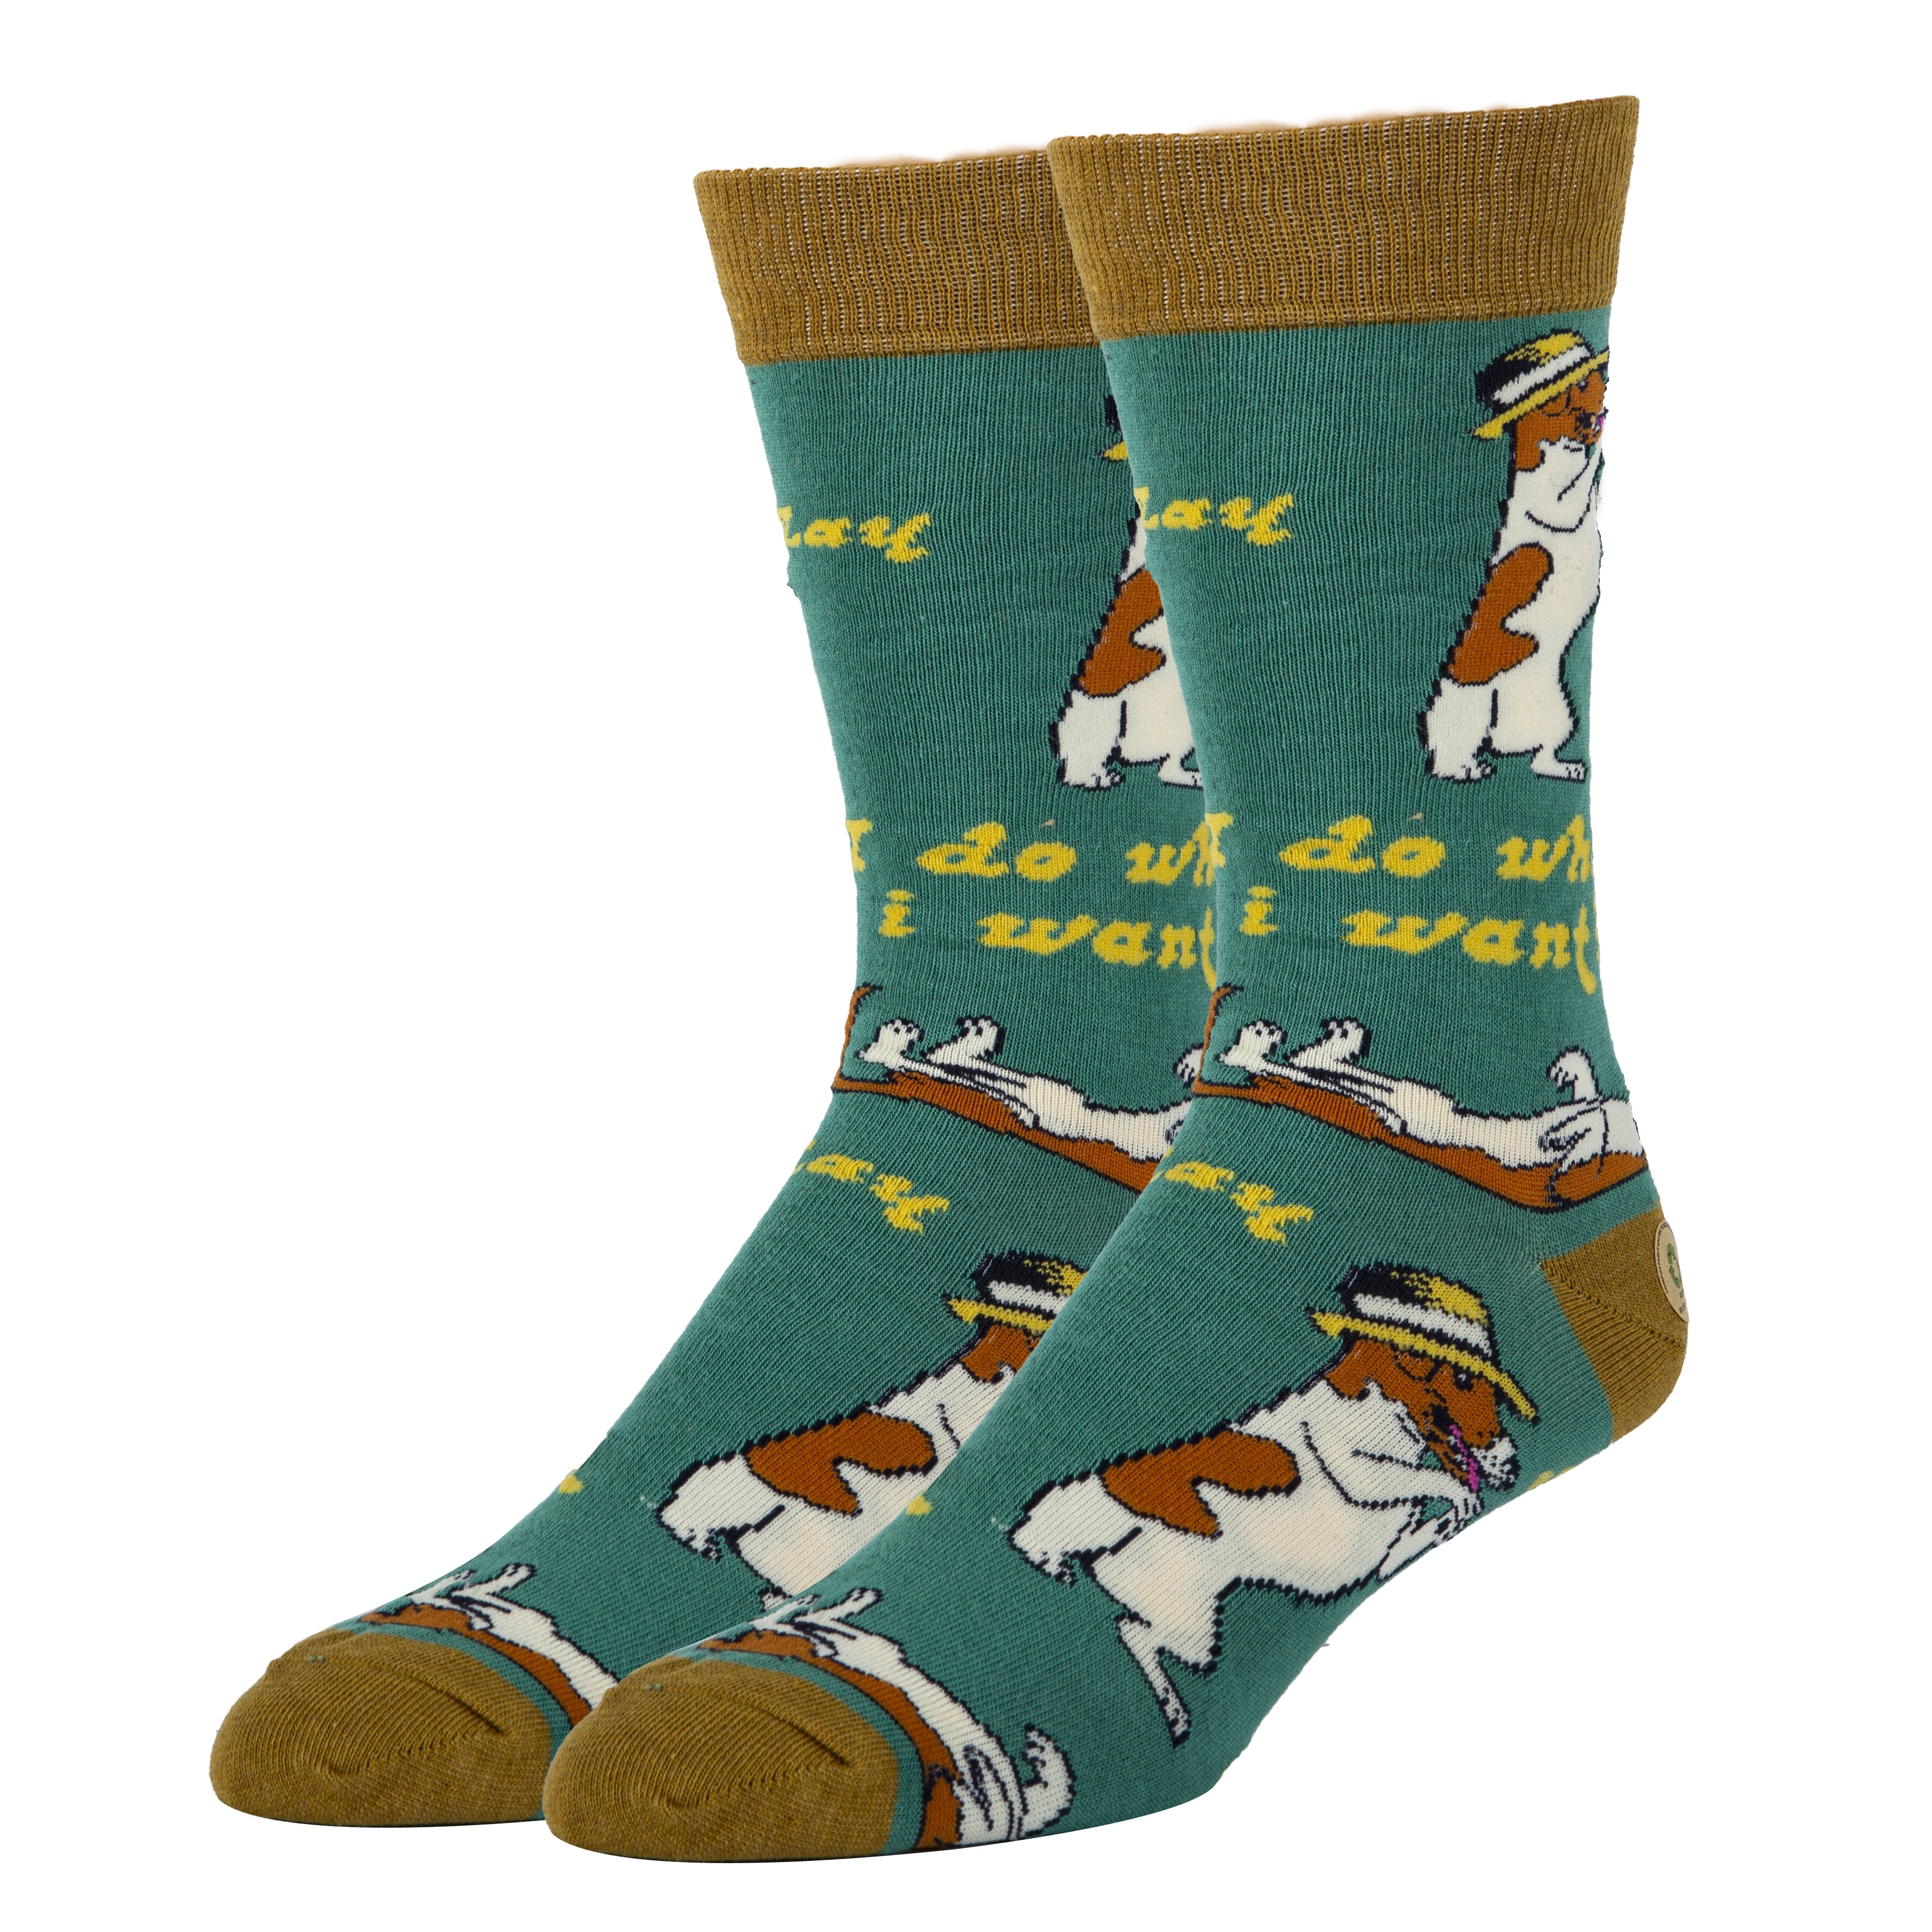 Dog Park Greetings Men's Socks  Funny Socks for Dog Lovers - Cute